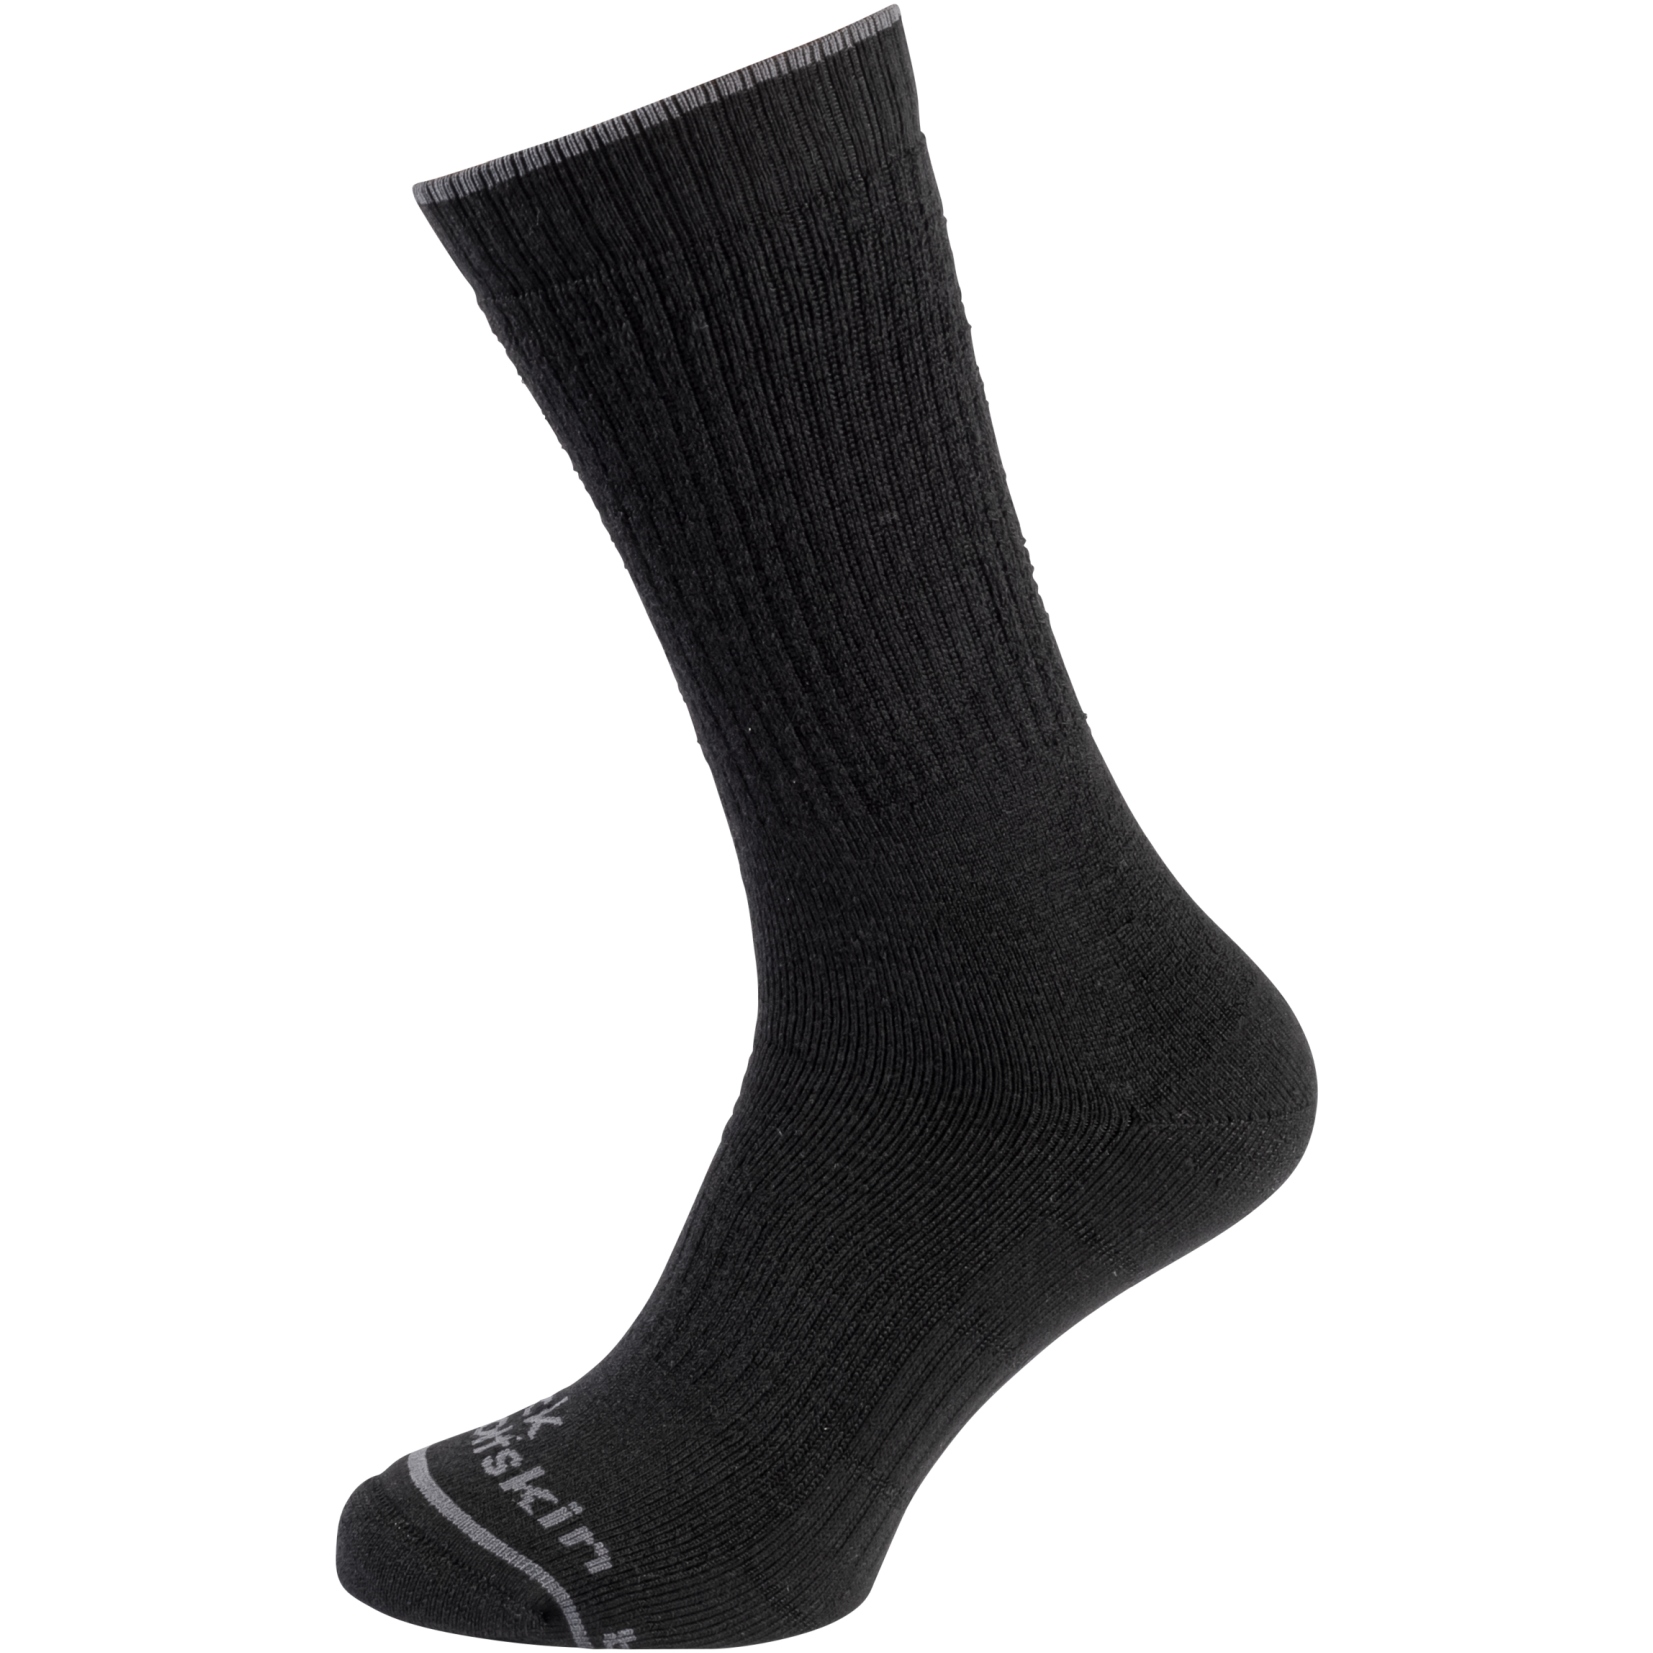 Produktbild von Jack Wolfskin Trekking Merino Classic Cut Socken - schwarz